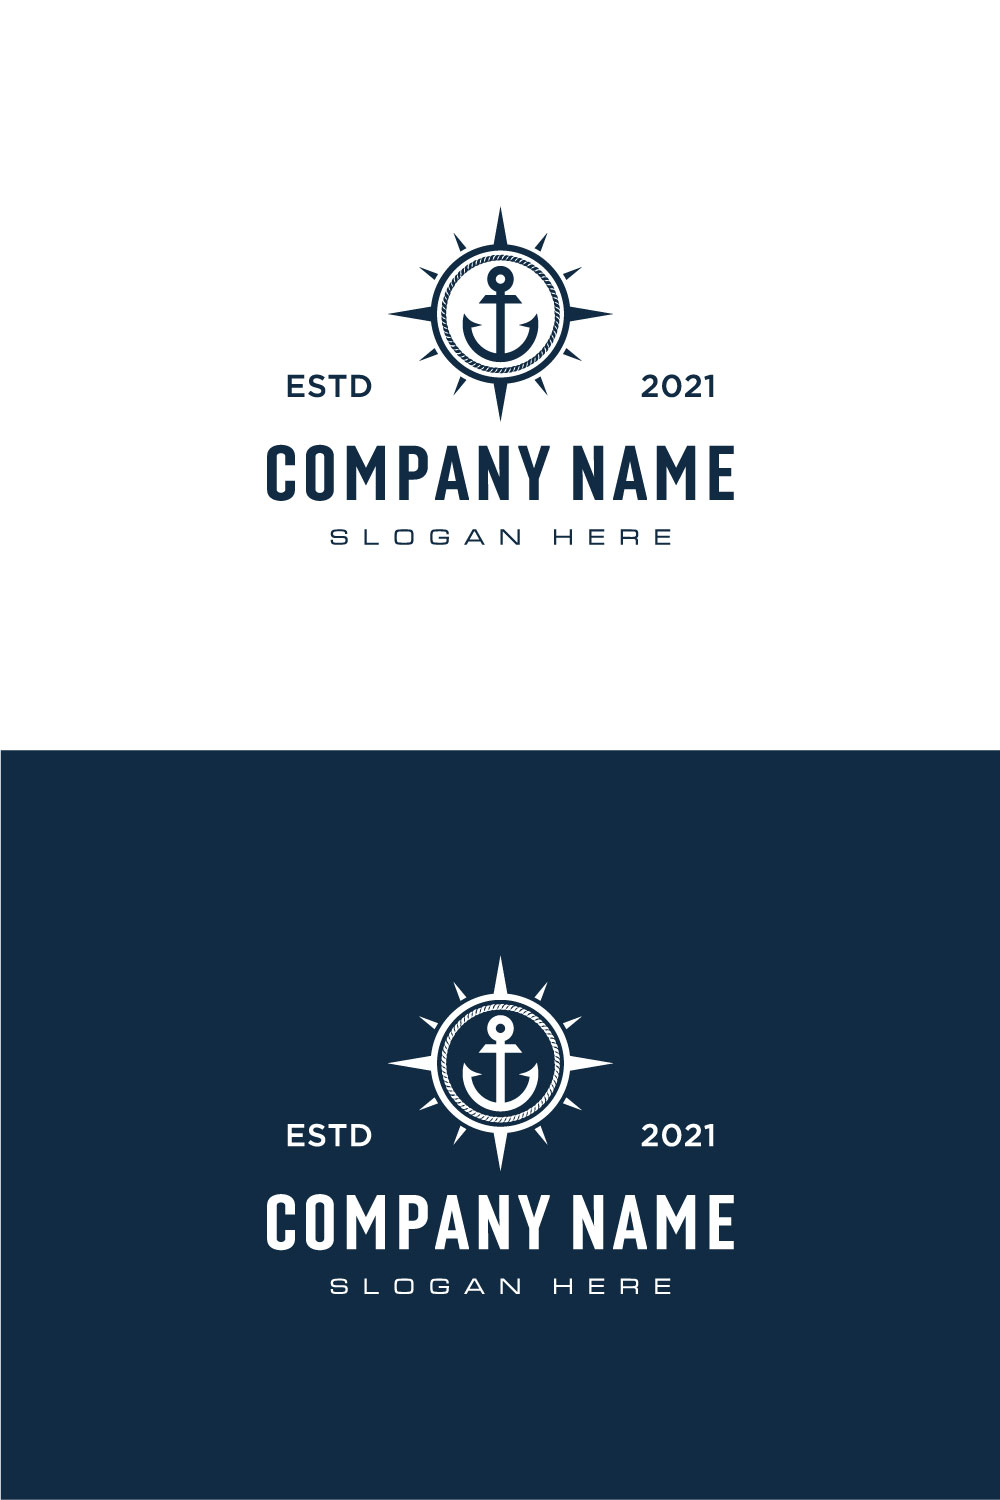 Anchor And Compass Logo Design Vector Facebook Image.